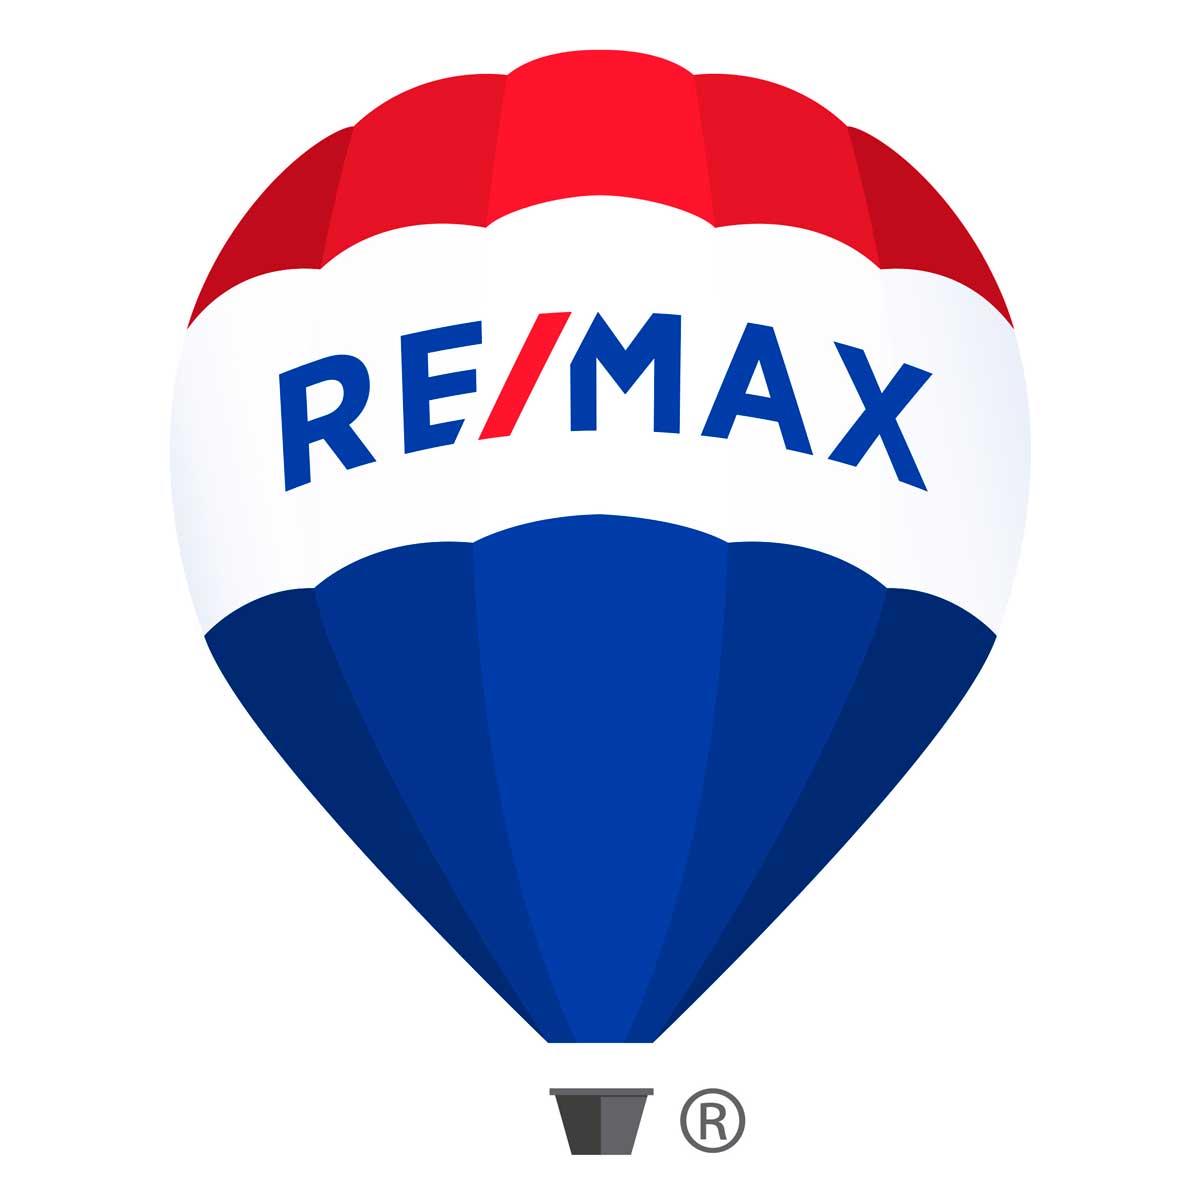 (c) Remax.com.uy